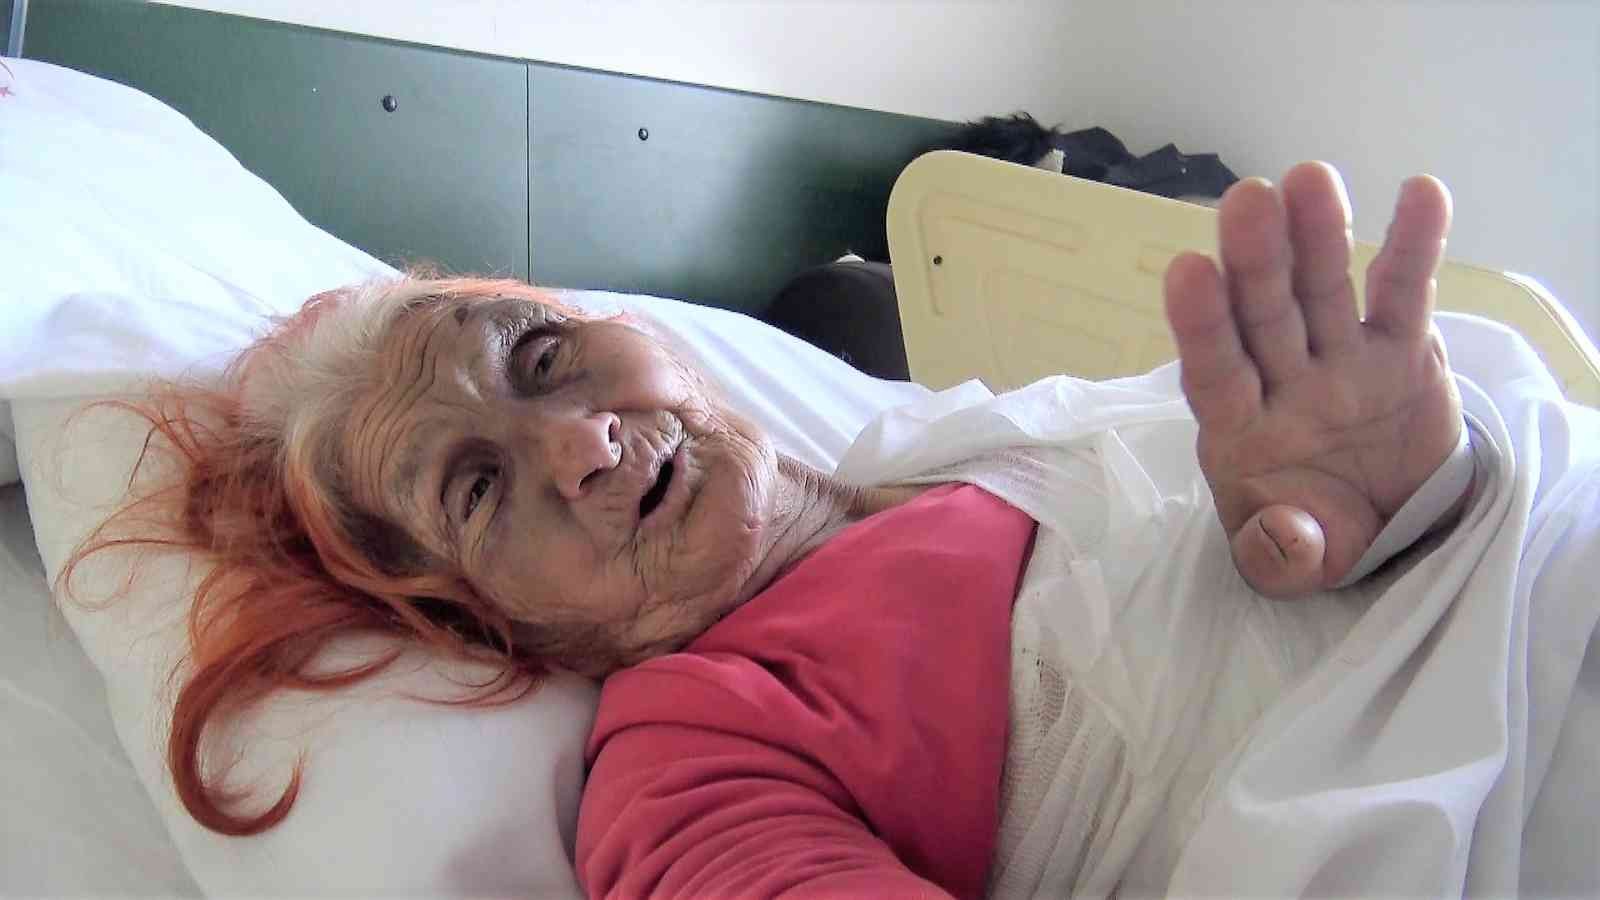 5 gün sonra İHA muhabirinin bulduğu yaşlı kadın yaşama tutunmaya çalışıyor #denizli